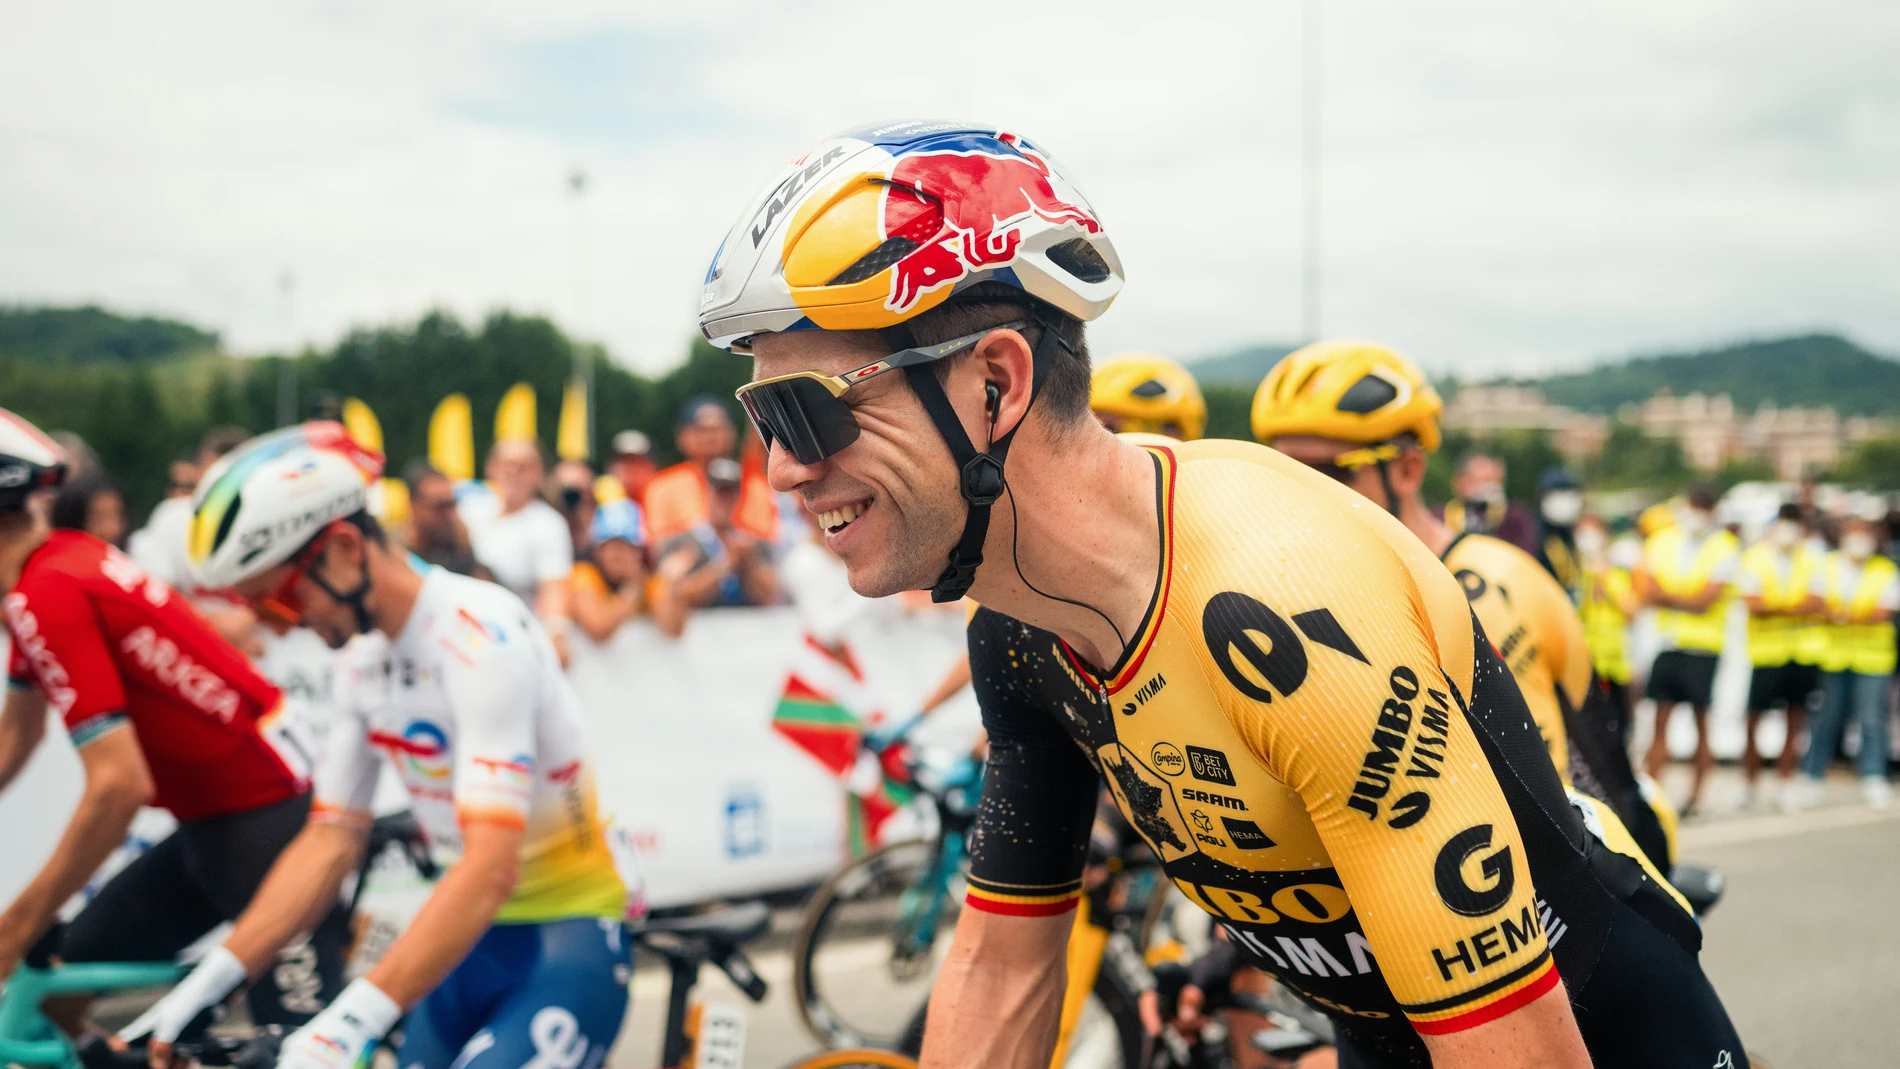 La paternidad llama a Wout van Aert, que abandona el Tour de Francia